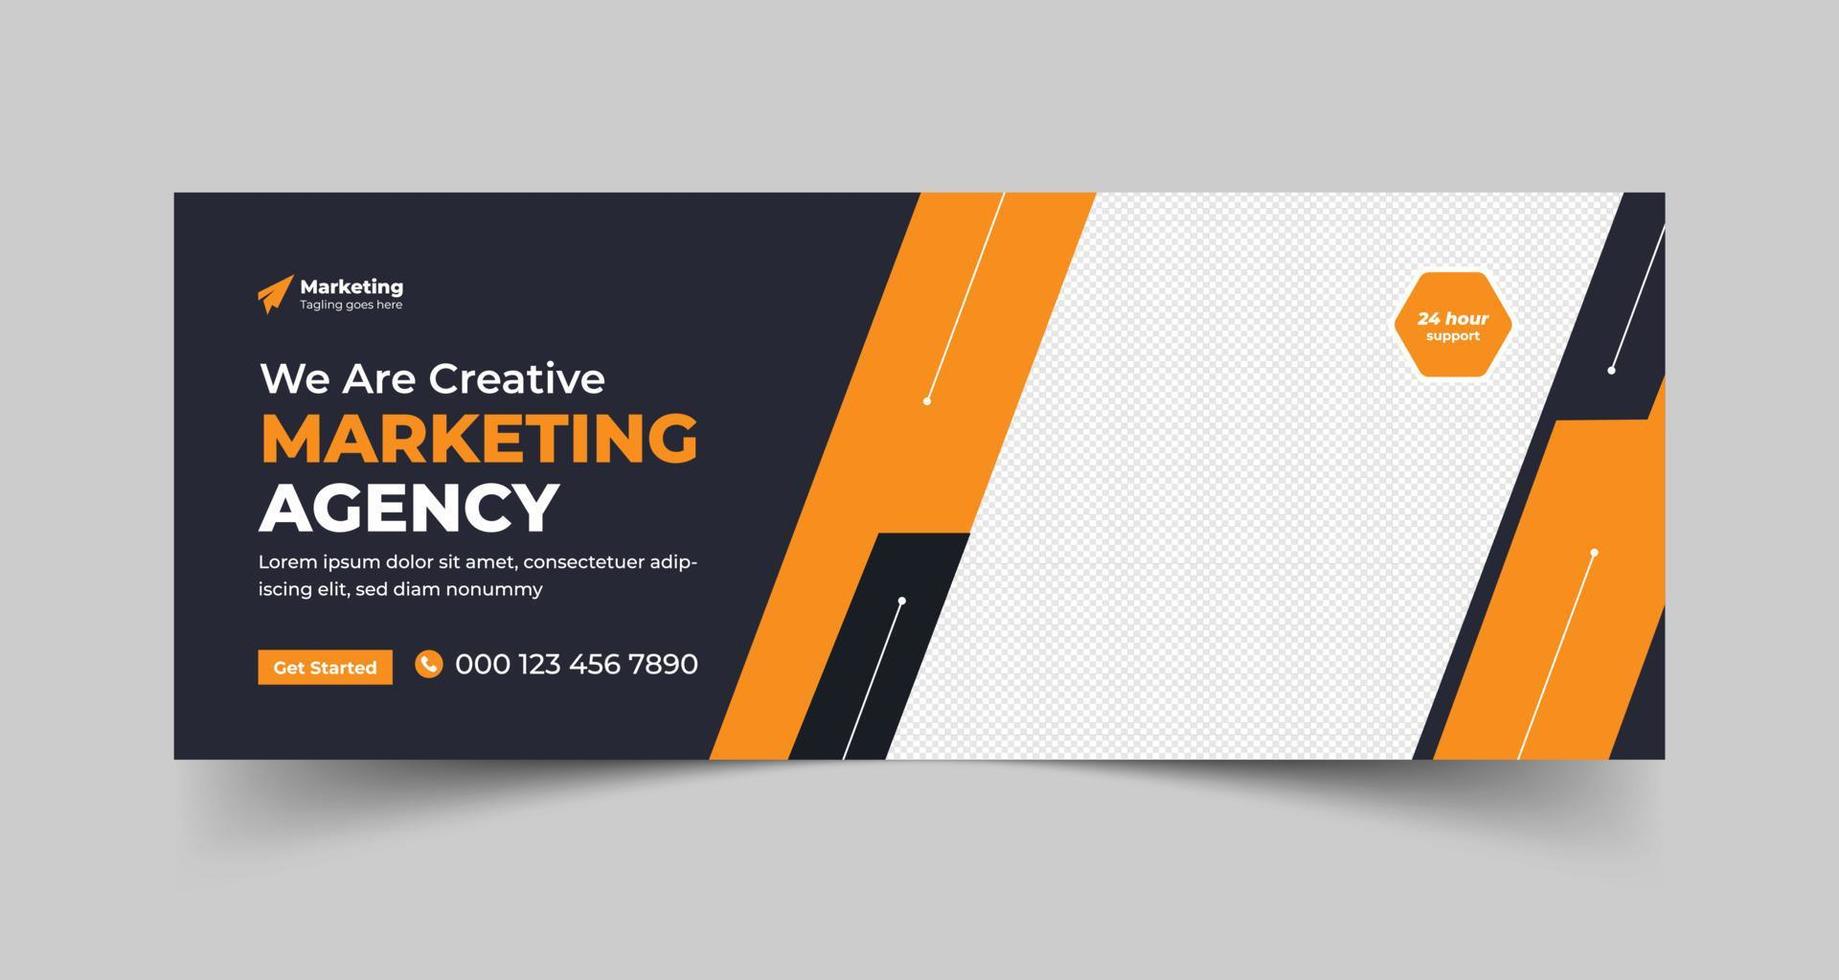 digital márketing agencia Facebook cubrir con creativo forma o web bandera para digital márketing negocio vector